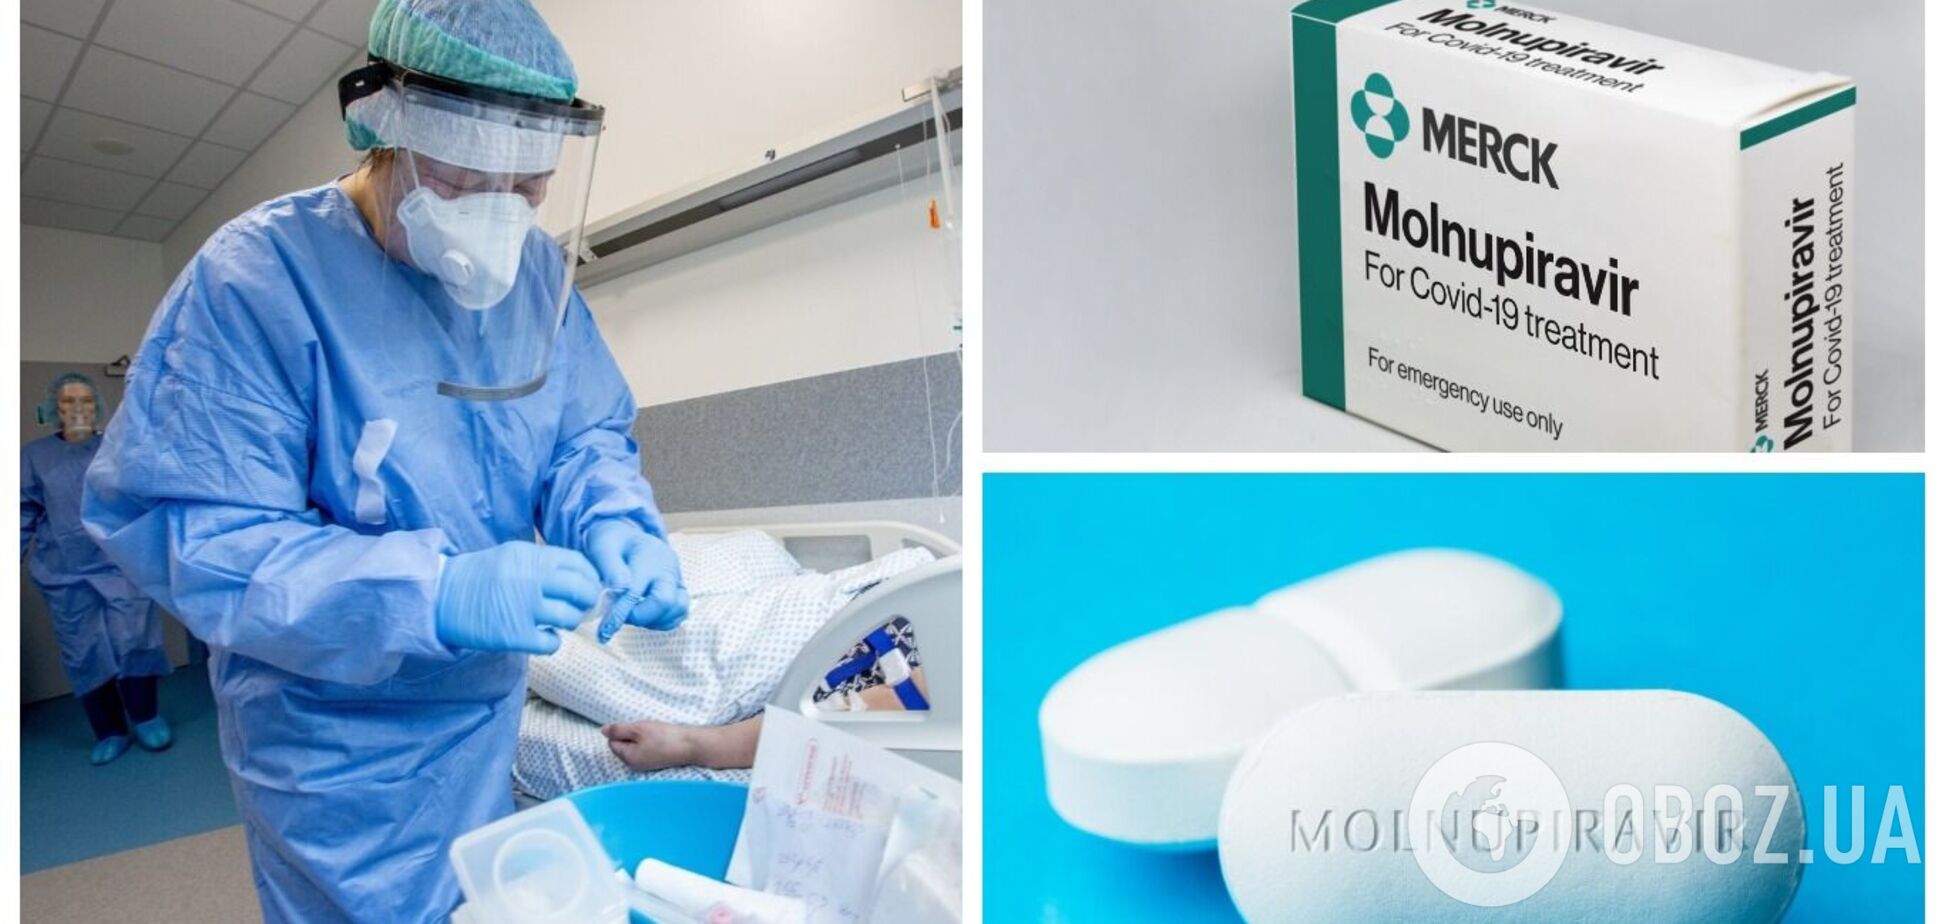 В Украине зарегистрировали препарат 'Молнупиравир' для лечения COVID-19: что о нем известно